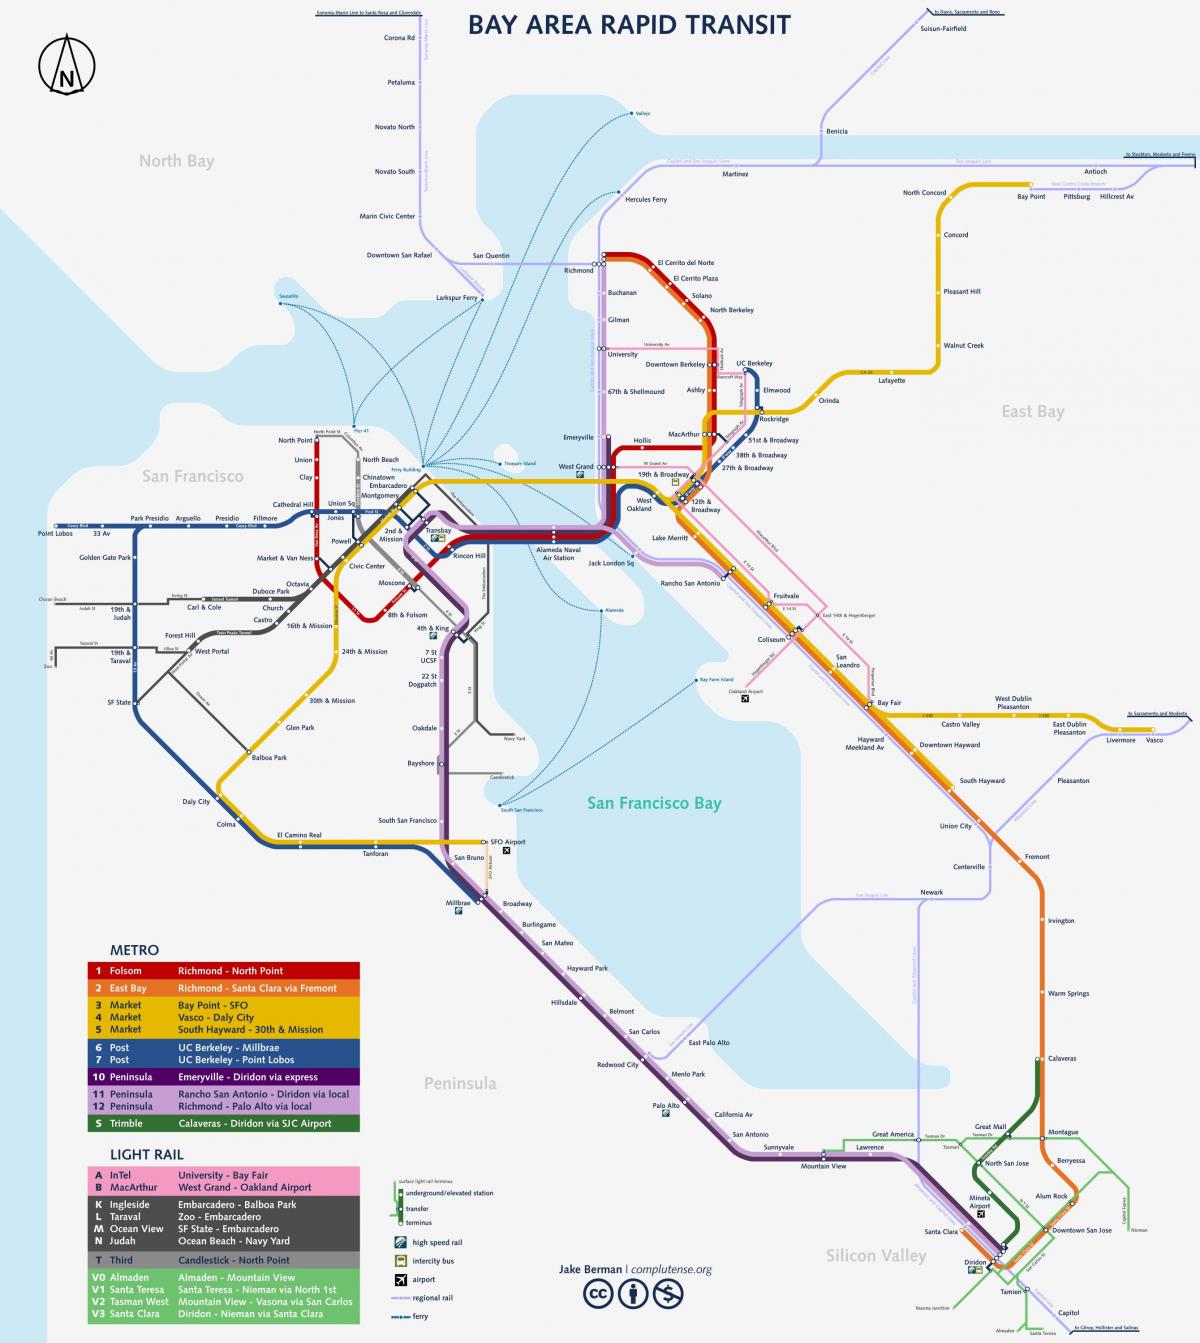 San Francisco podzemni sistem zemljevid